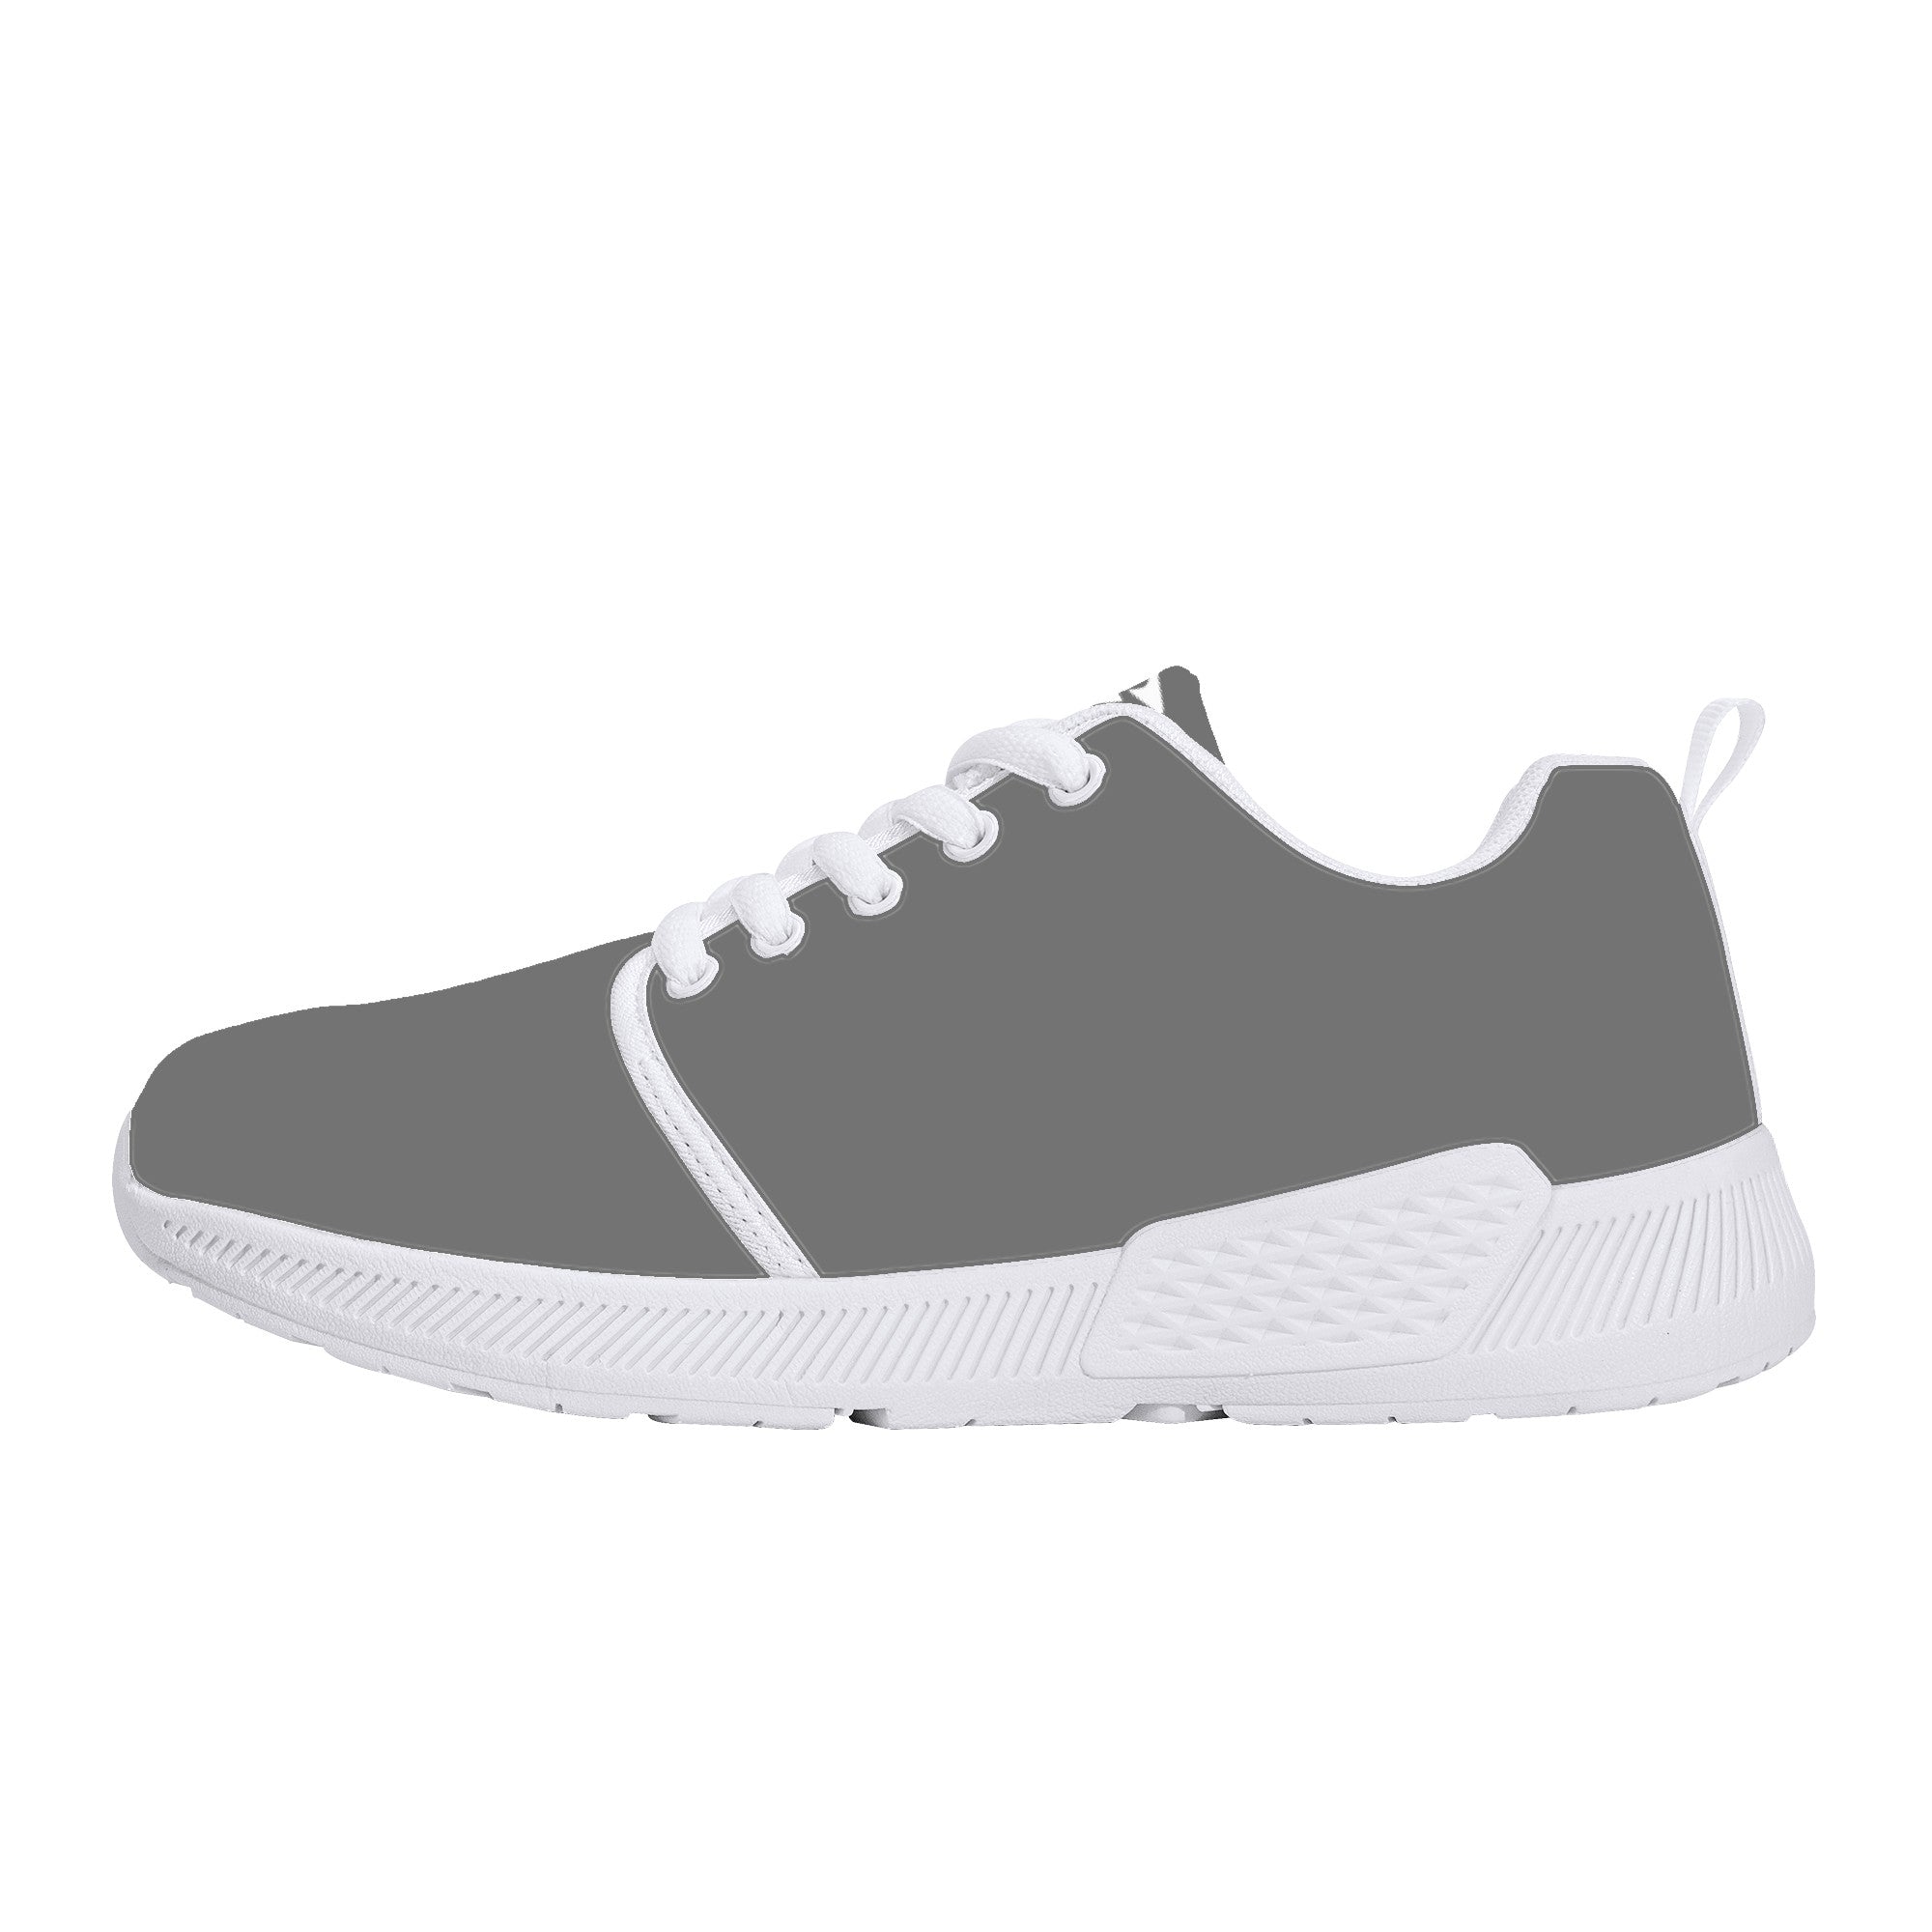 Paycor 2.0 Sneakers - White - Shoe Zero